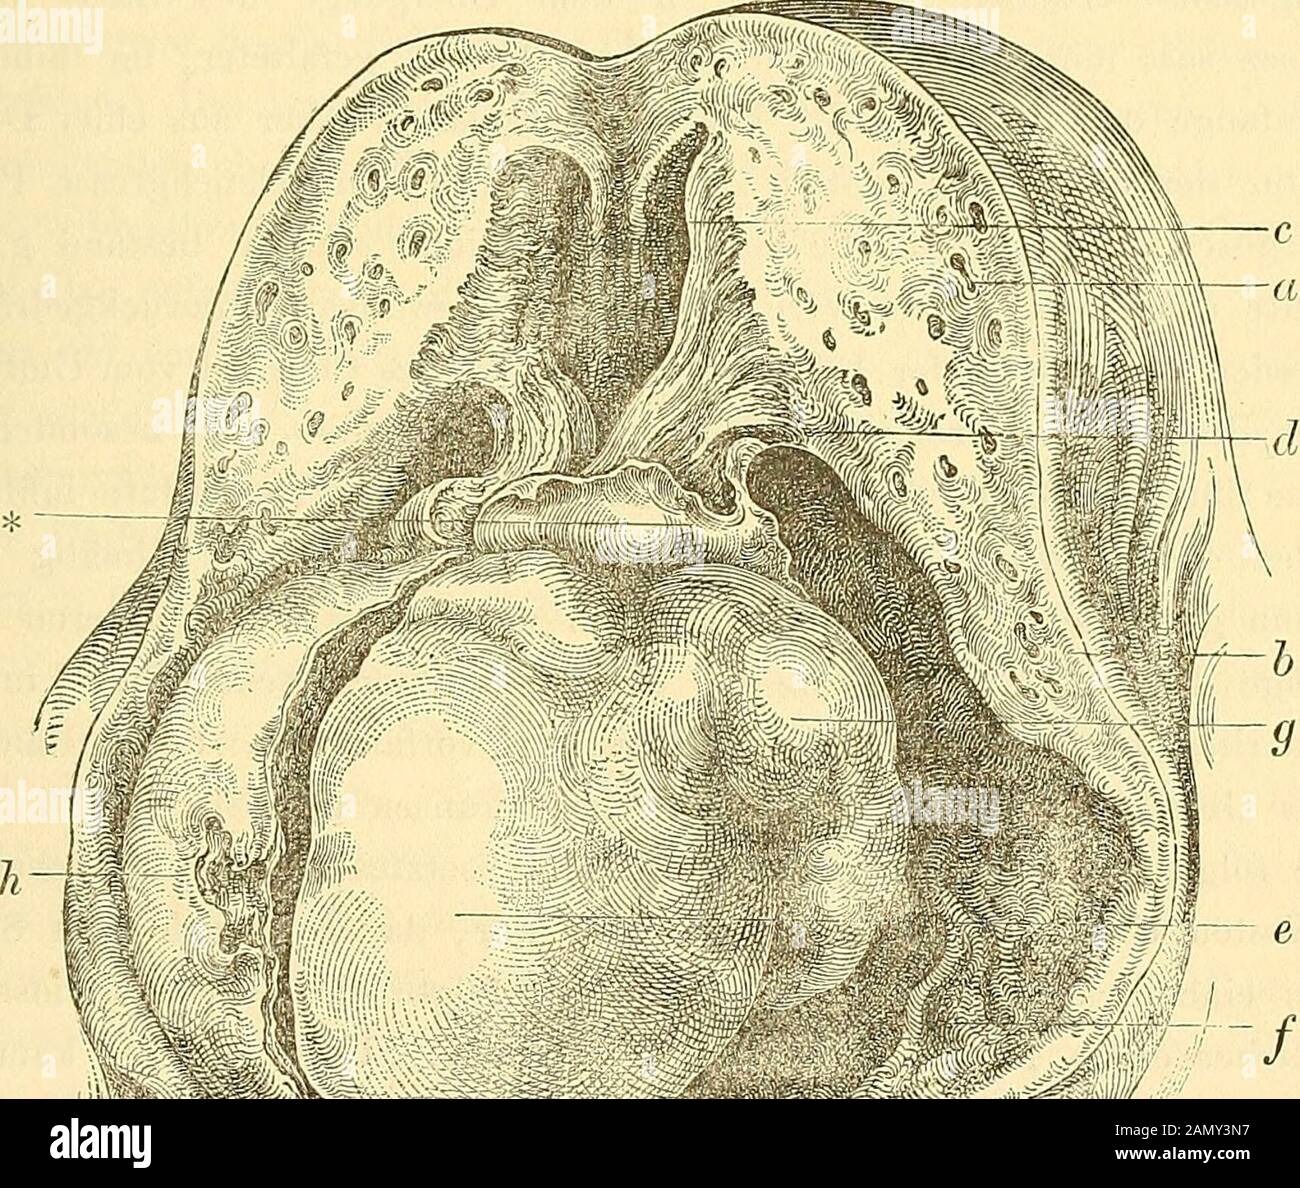 Muttermund anatomie